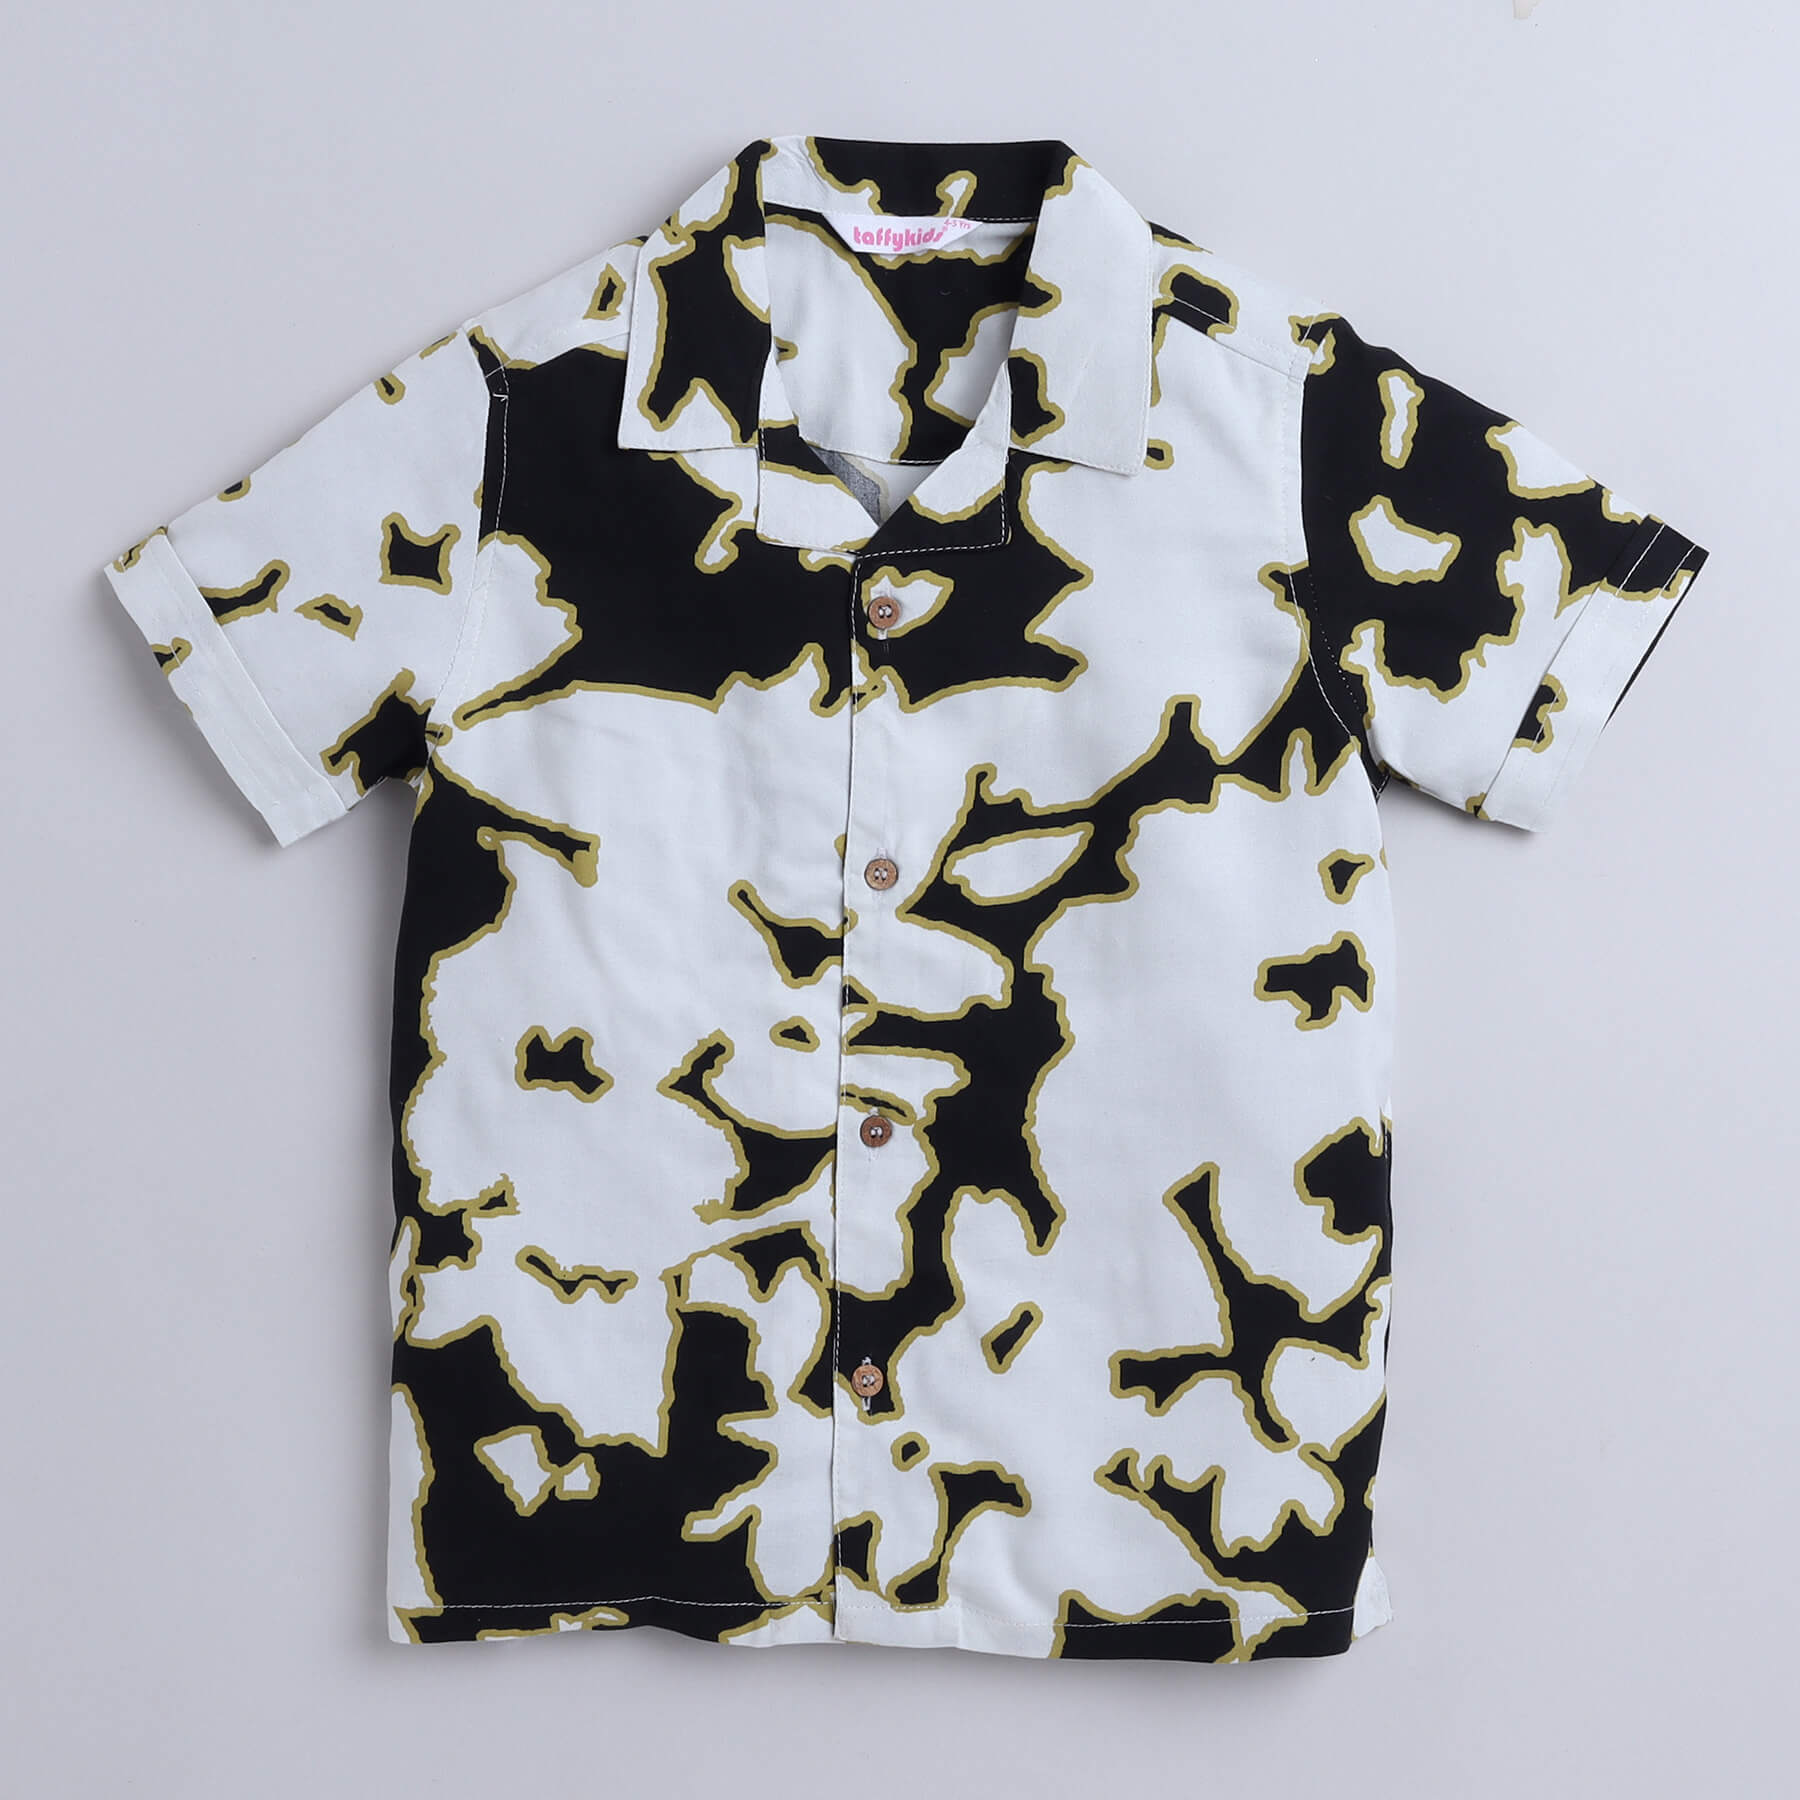 Taffy viscose abstract printed half sleeves shirt and shorts set - Black/Multi